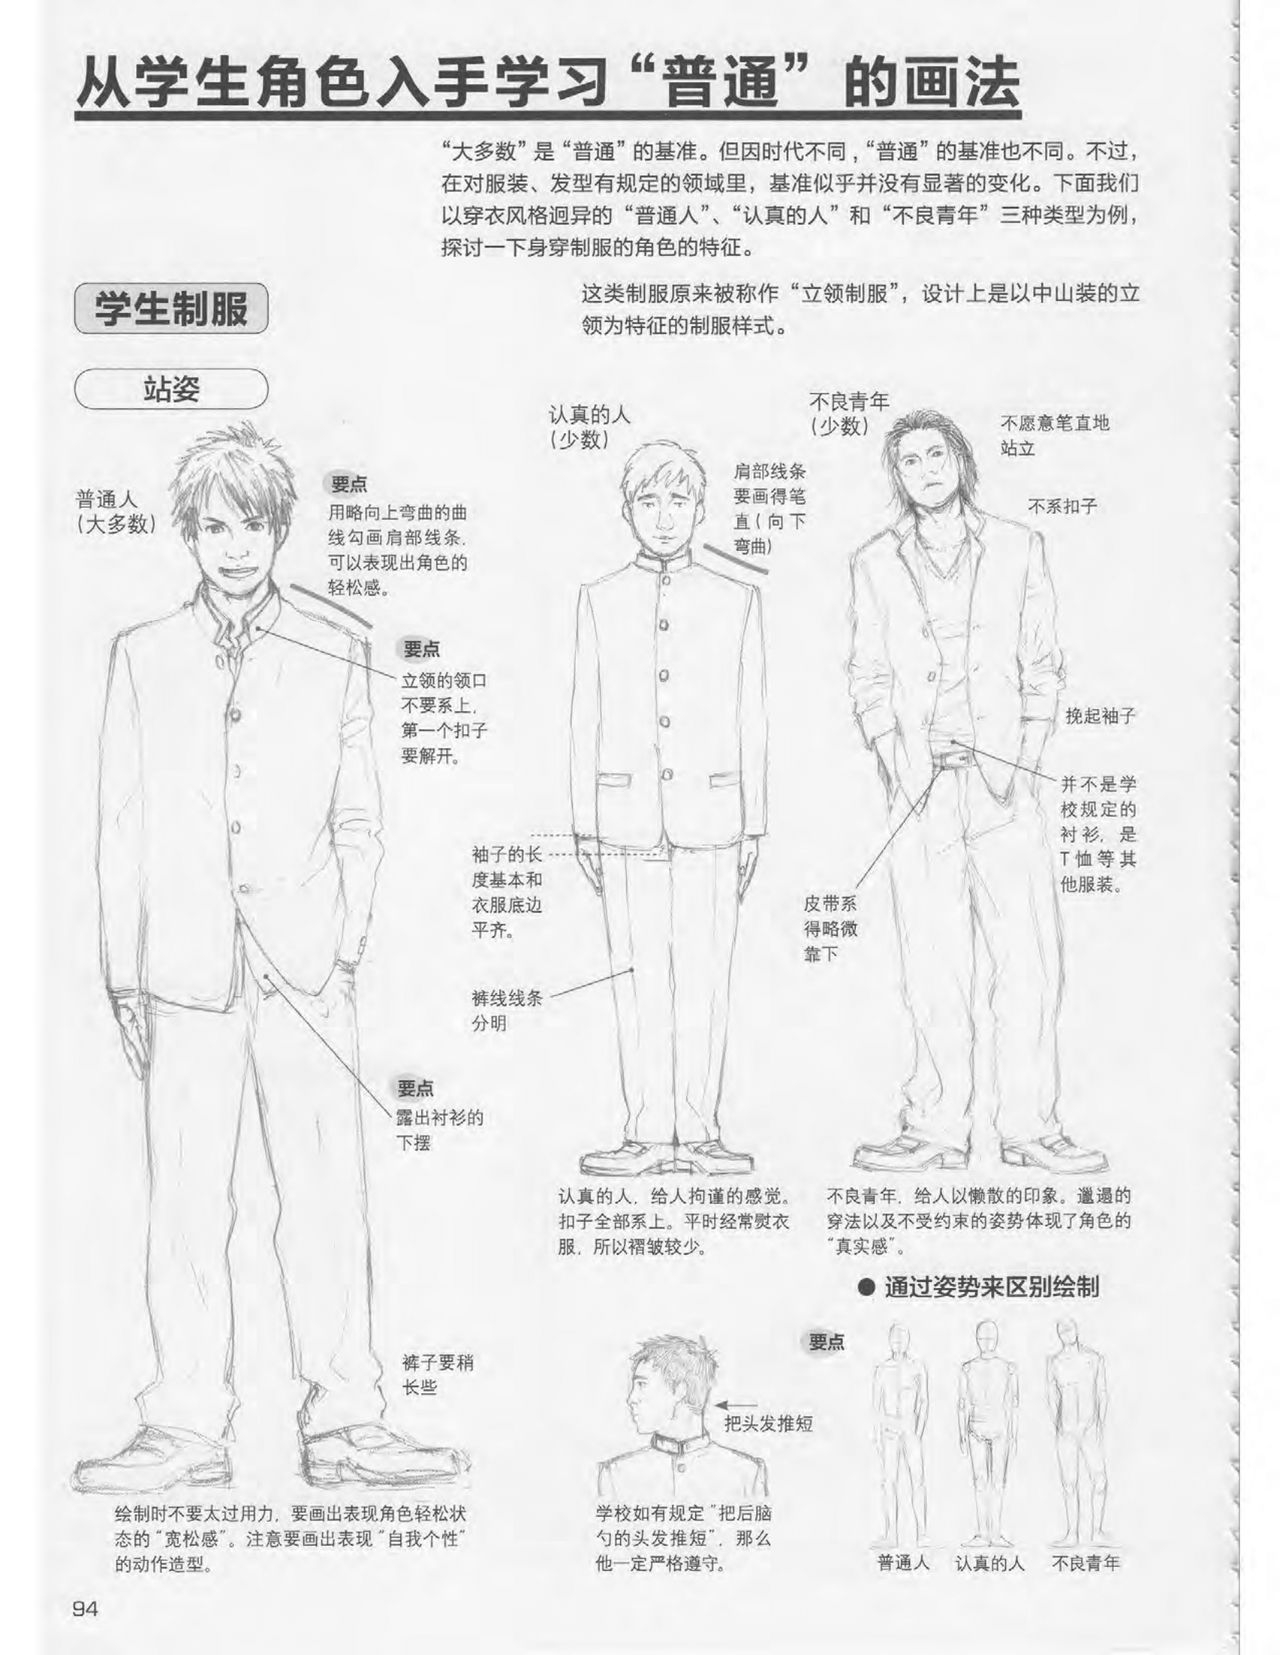 Japanese Manga Master Lecture 3: Lin Akira and Kakumaru Maru Talk About Glamorous Character Modeling 94